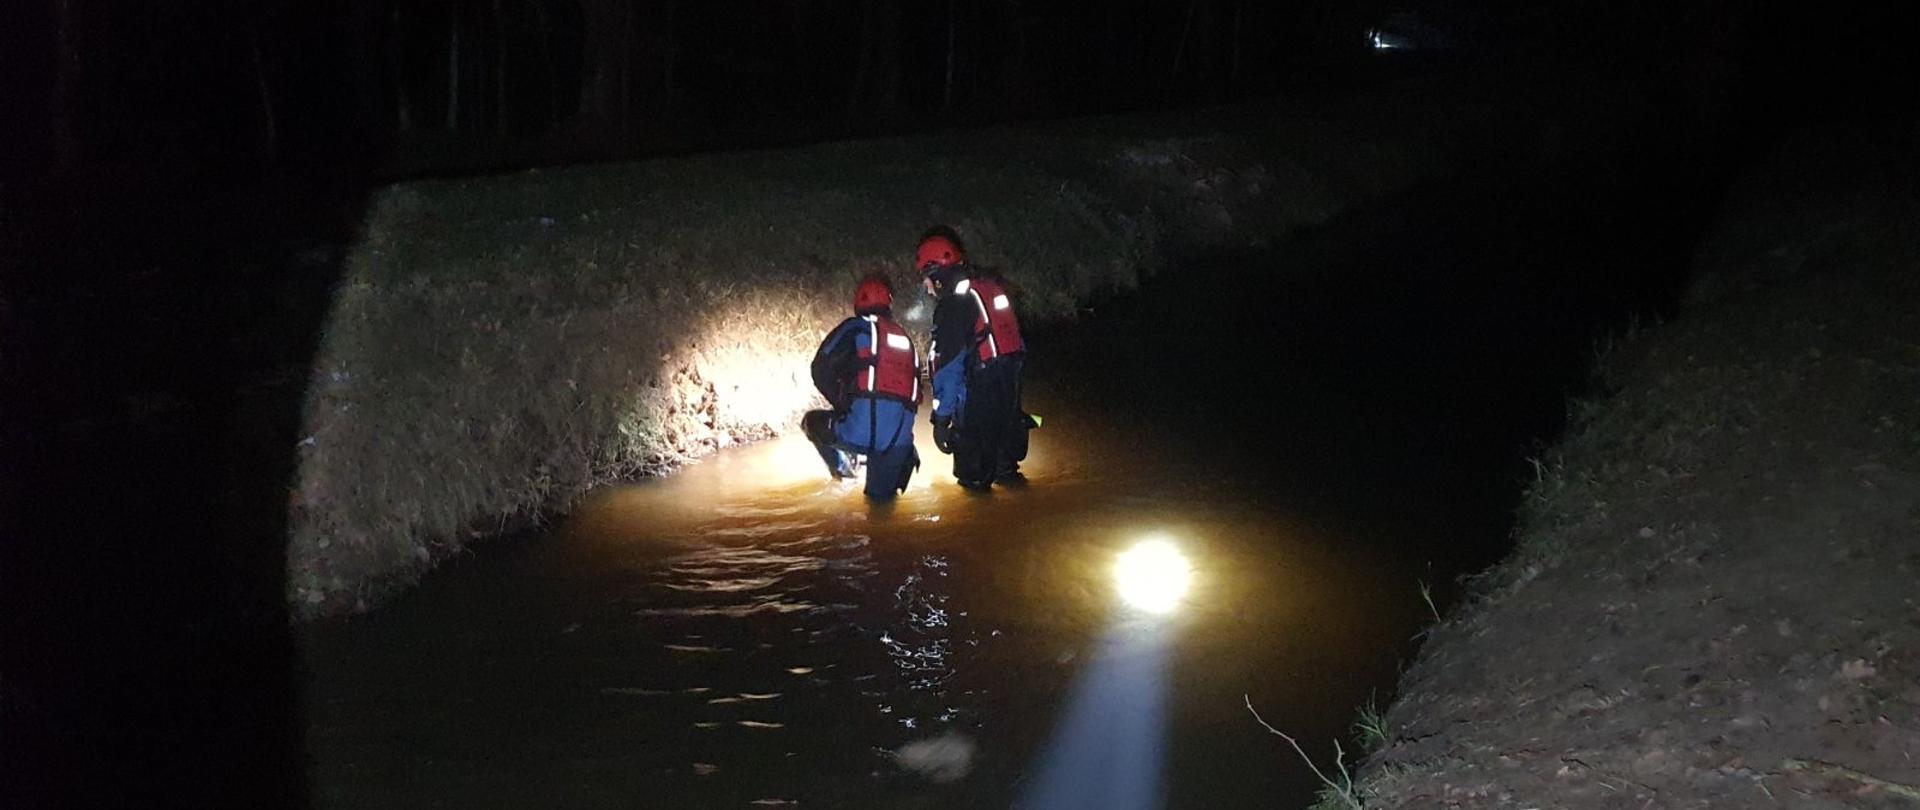 Kanał wodny nocą. W kanale dwóch ratowników ubranych w skafandry do pracy w wodzie. Ratownicy penetrują kanał. 